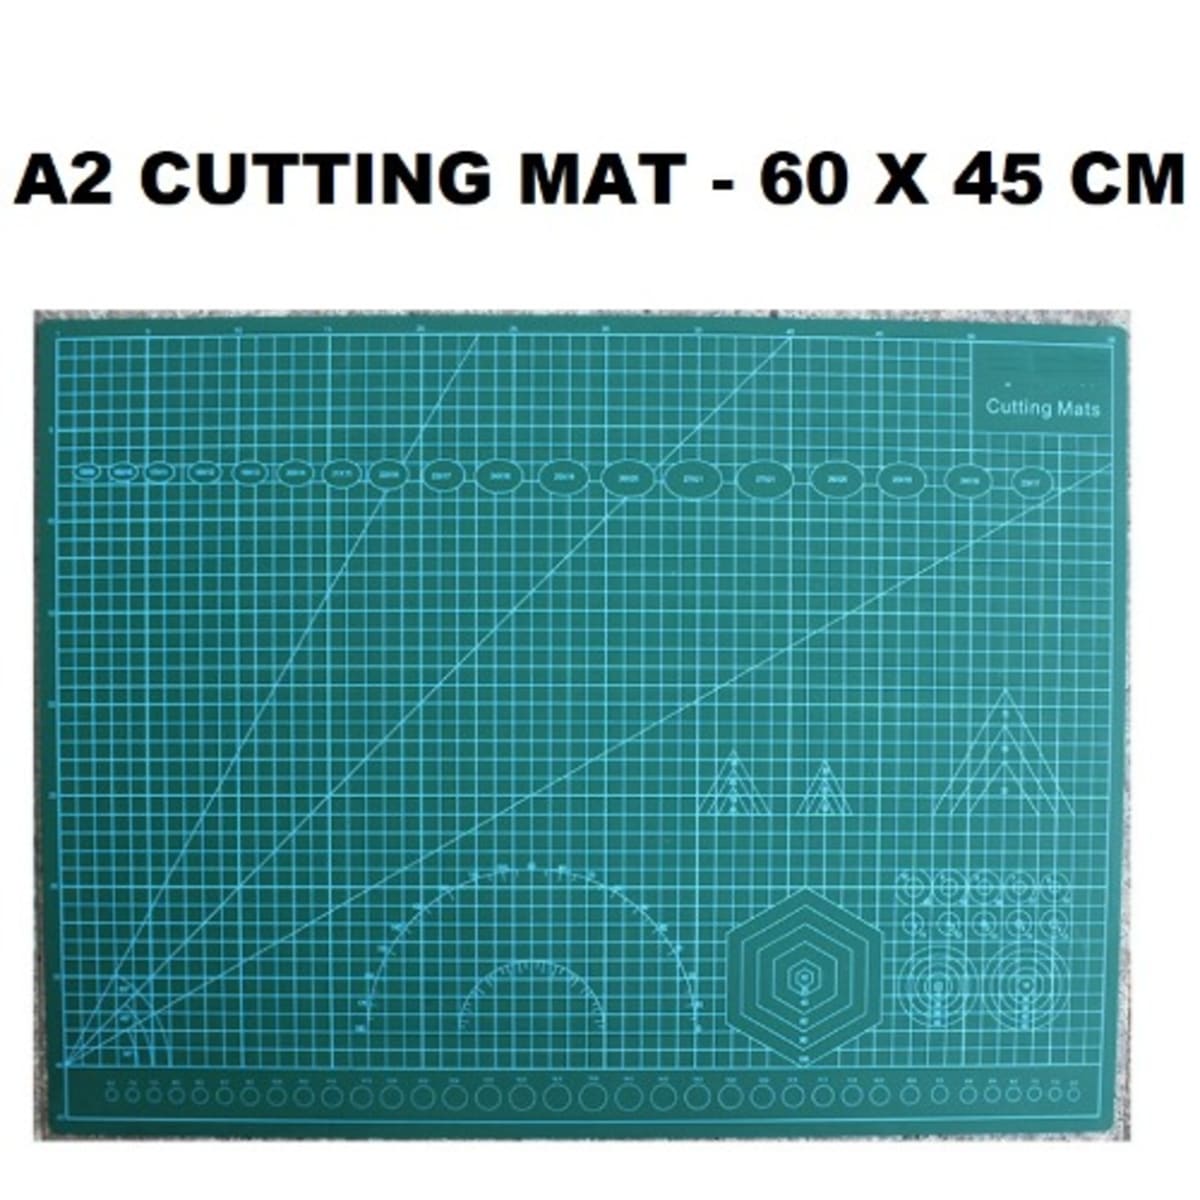 A2 Cutting Mat - To Buy Online - Cheap Cutting Mats